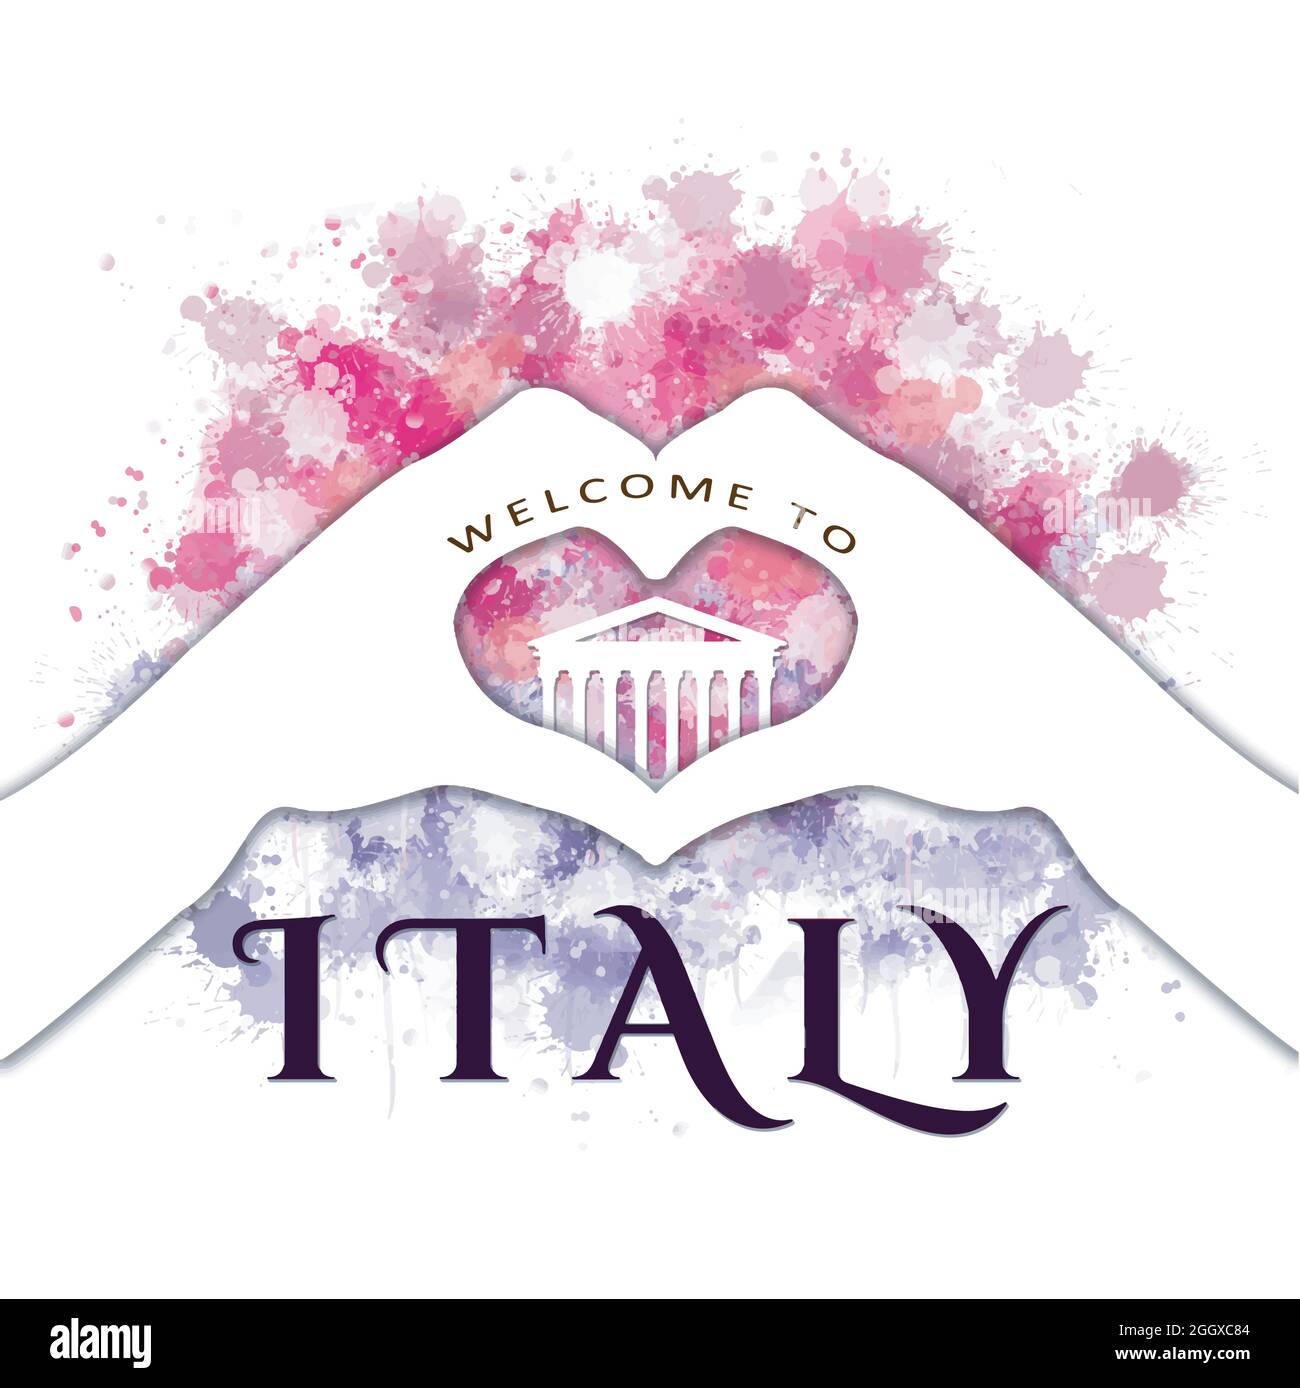 Willkommen in italien - Hände bilden Herzzeichen Stock Vektor